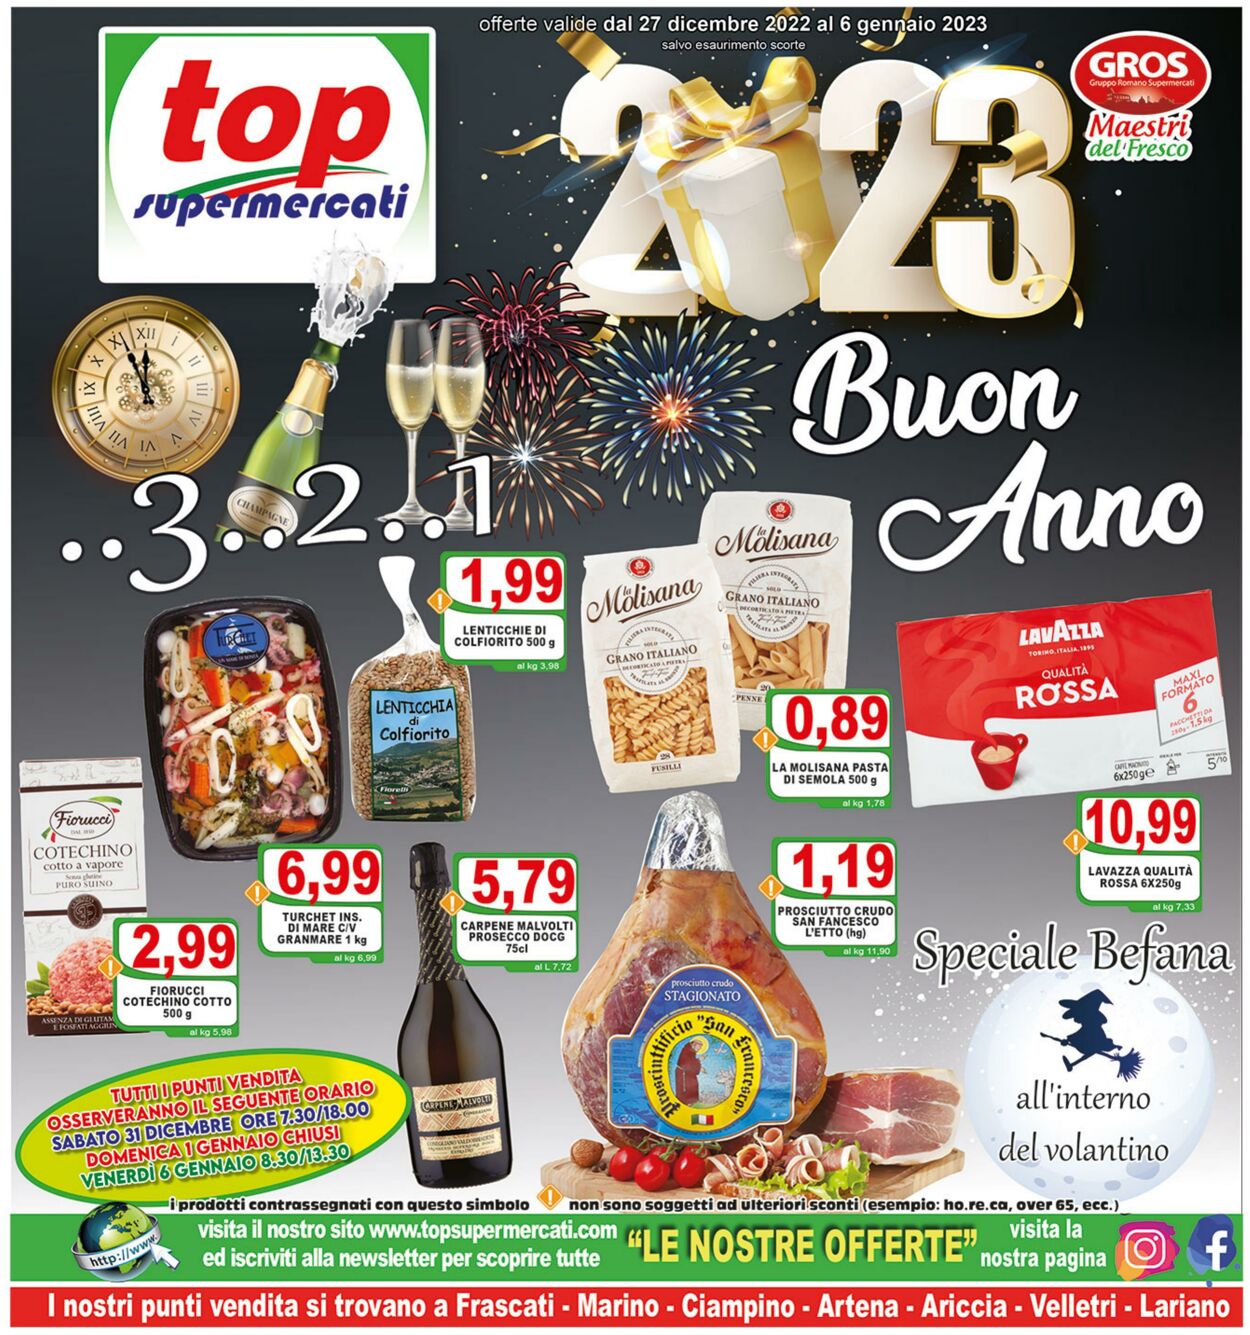 Top Supermercati Volantino Promozionale - Capodanno 2023 - Befana